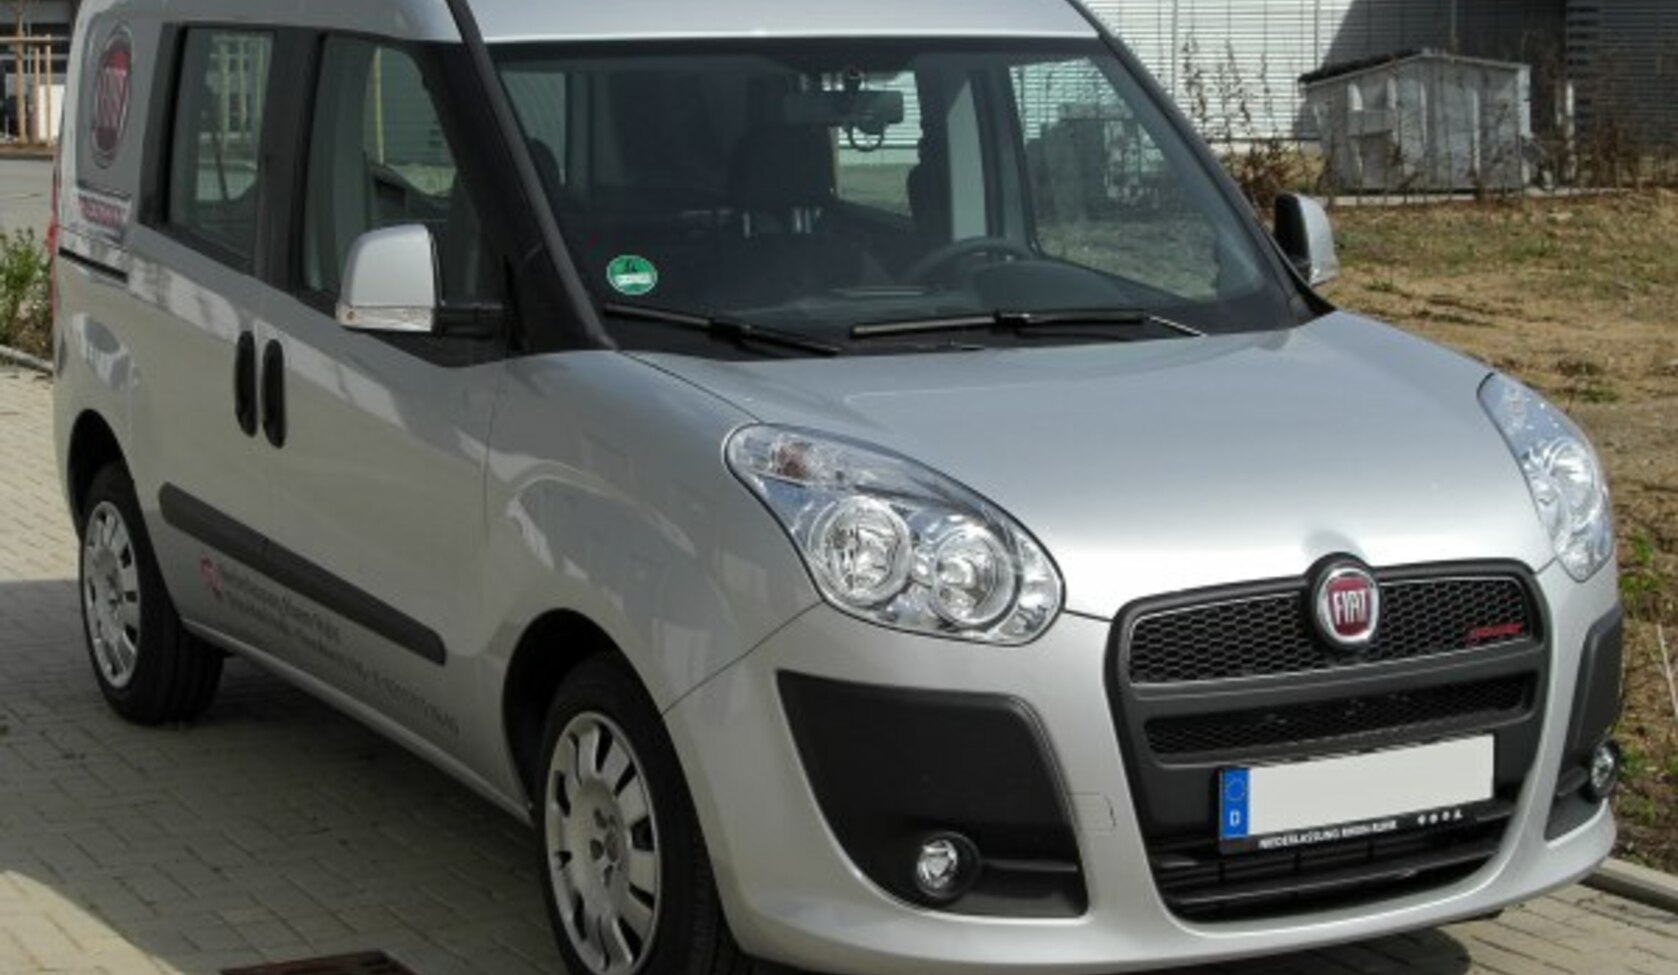 Fiat Doblo II 1.4 (95 Hp) 2009, 2010, 2011, 2012, 2013, 2014, 2015 